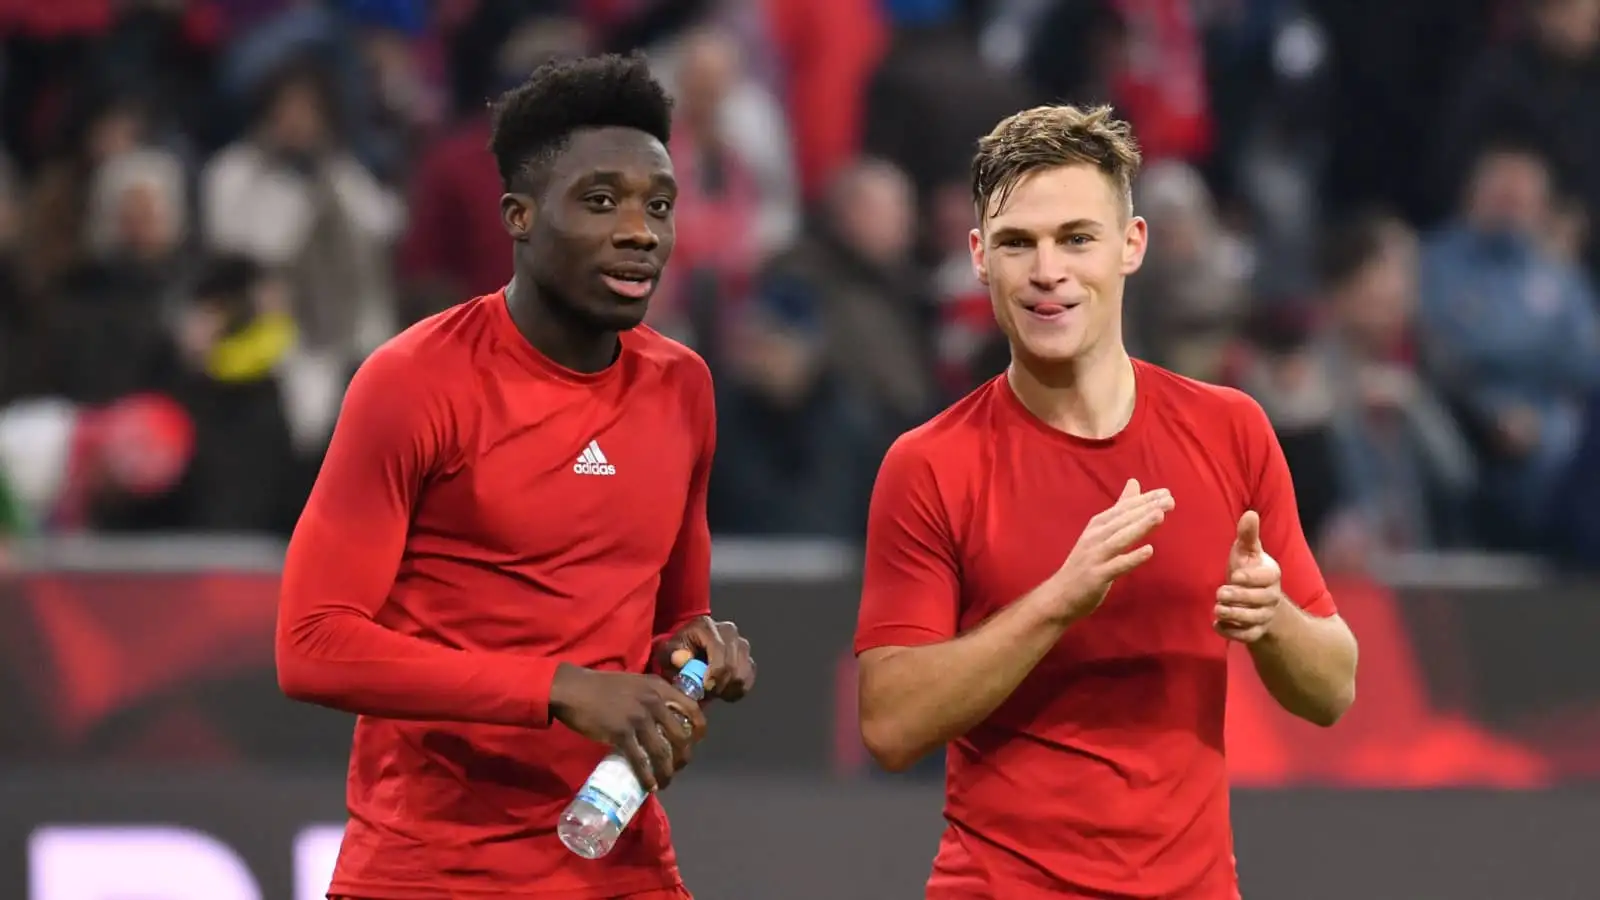 Bayern Munich stars Alphonso Davies and Joshua Kimmich